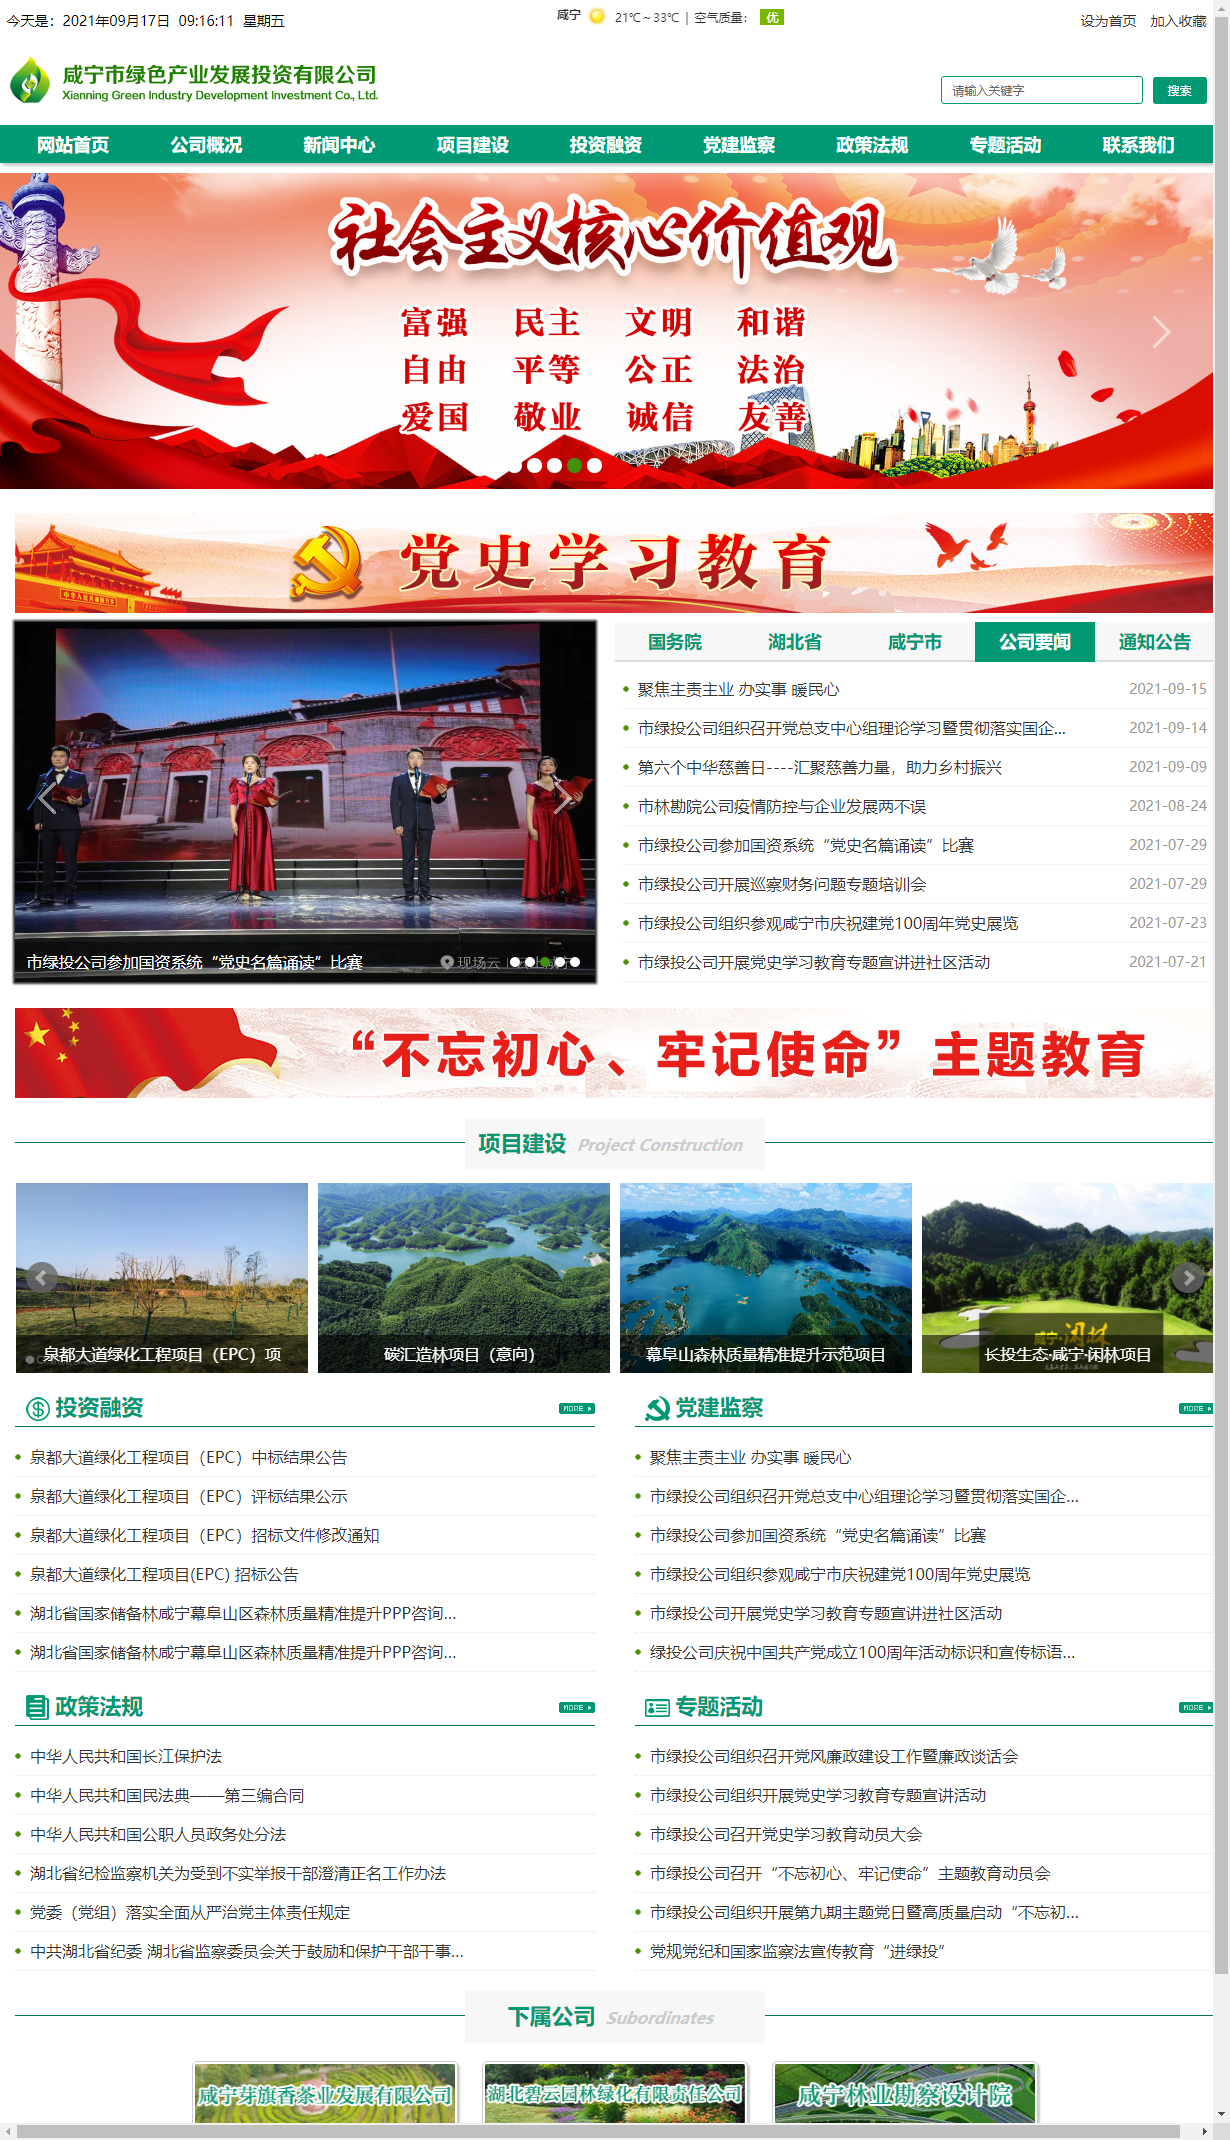 咸宁市绿色产业发展投资有限公司网站案例